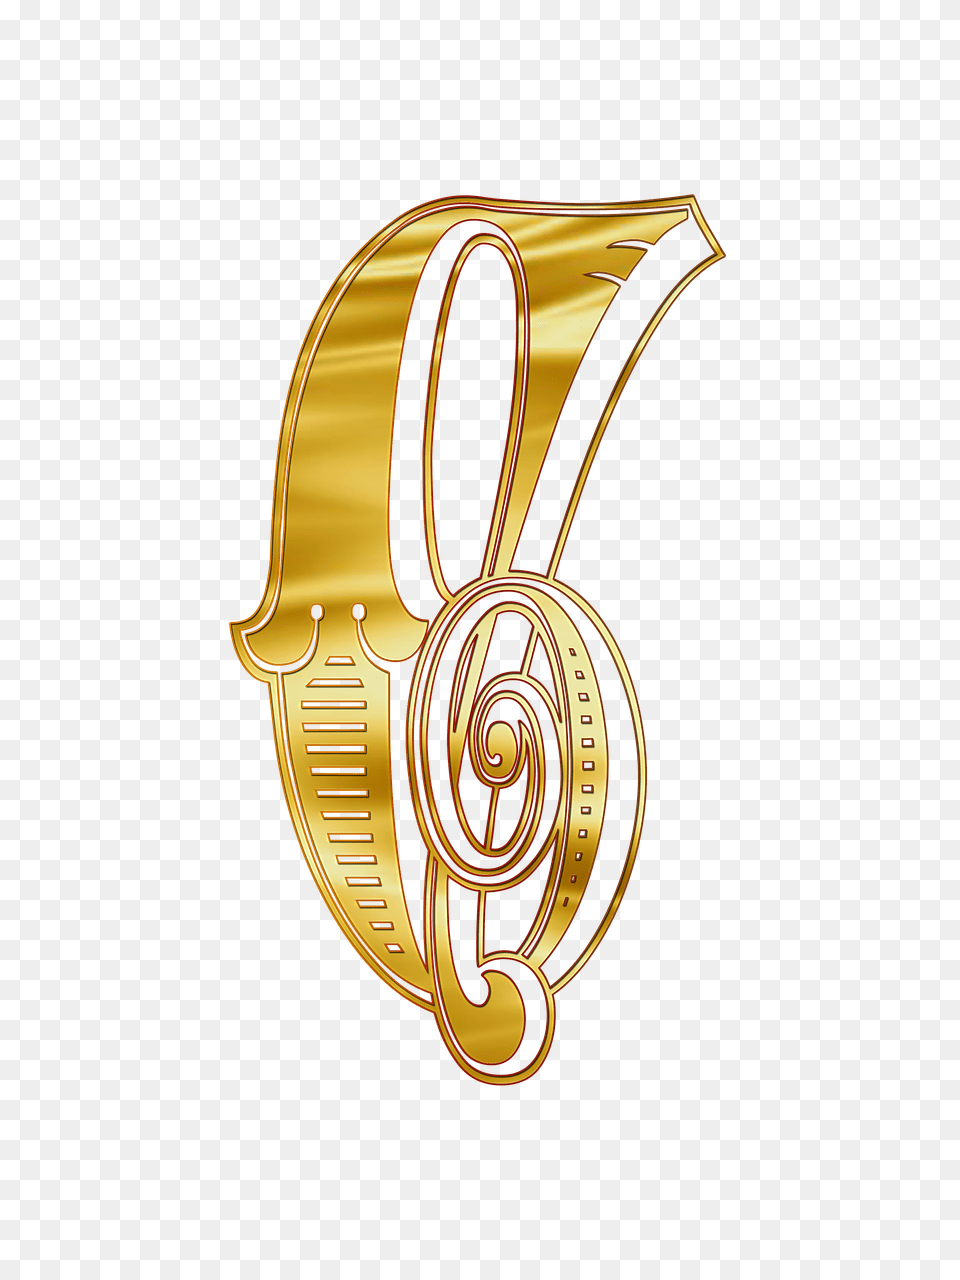 Cyrillic Capital Letter S, Logo, Symbol, Text, Emblem Png